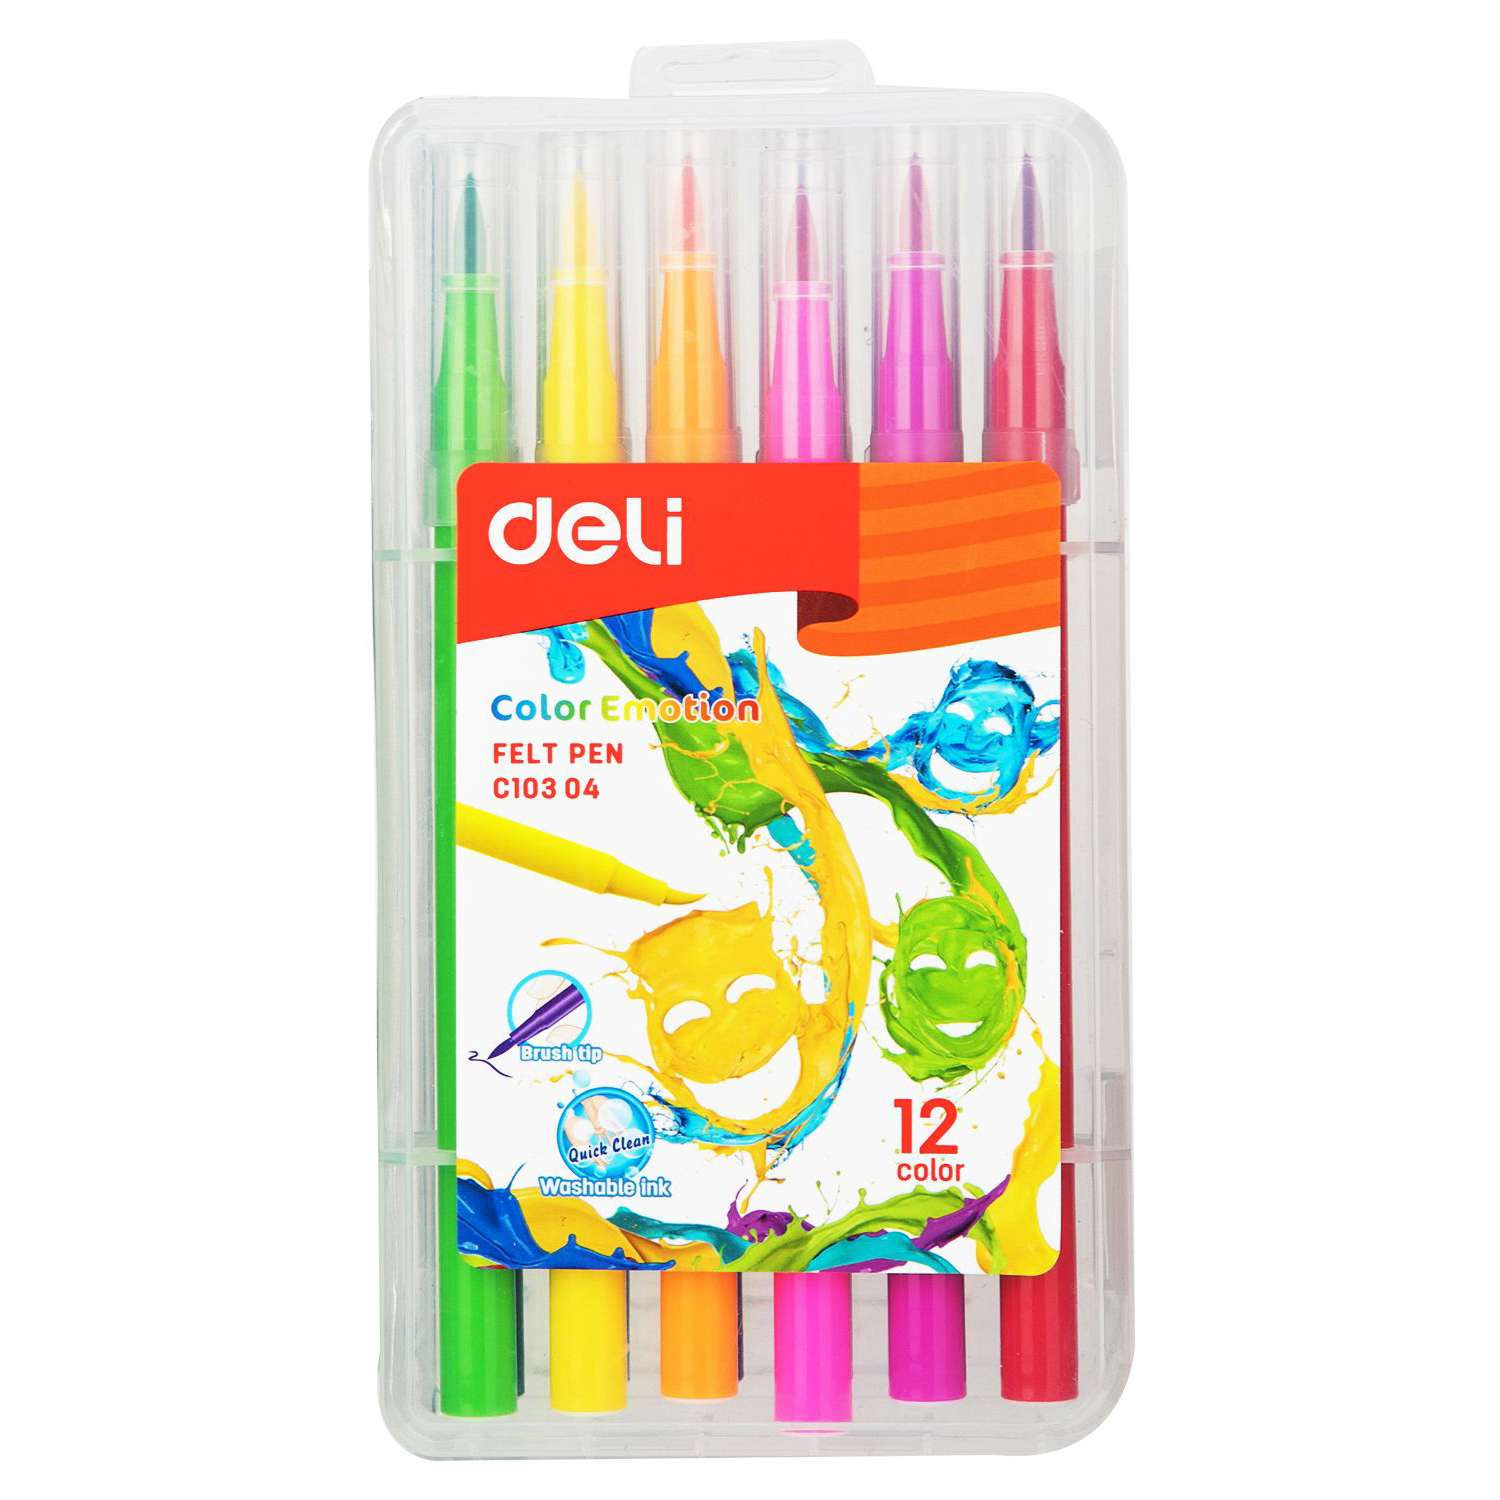 Фломастеры Deli Color Emotion кистевидные 12цветов EC10304 - фото 1